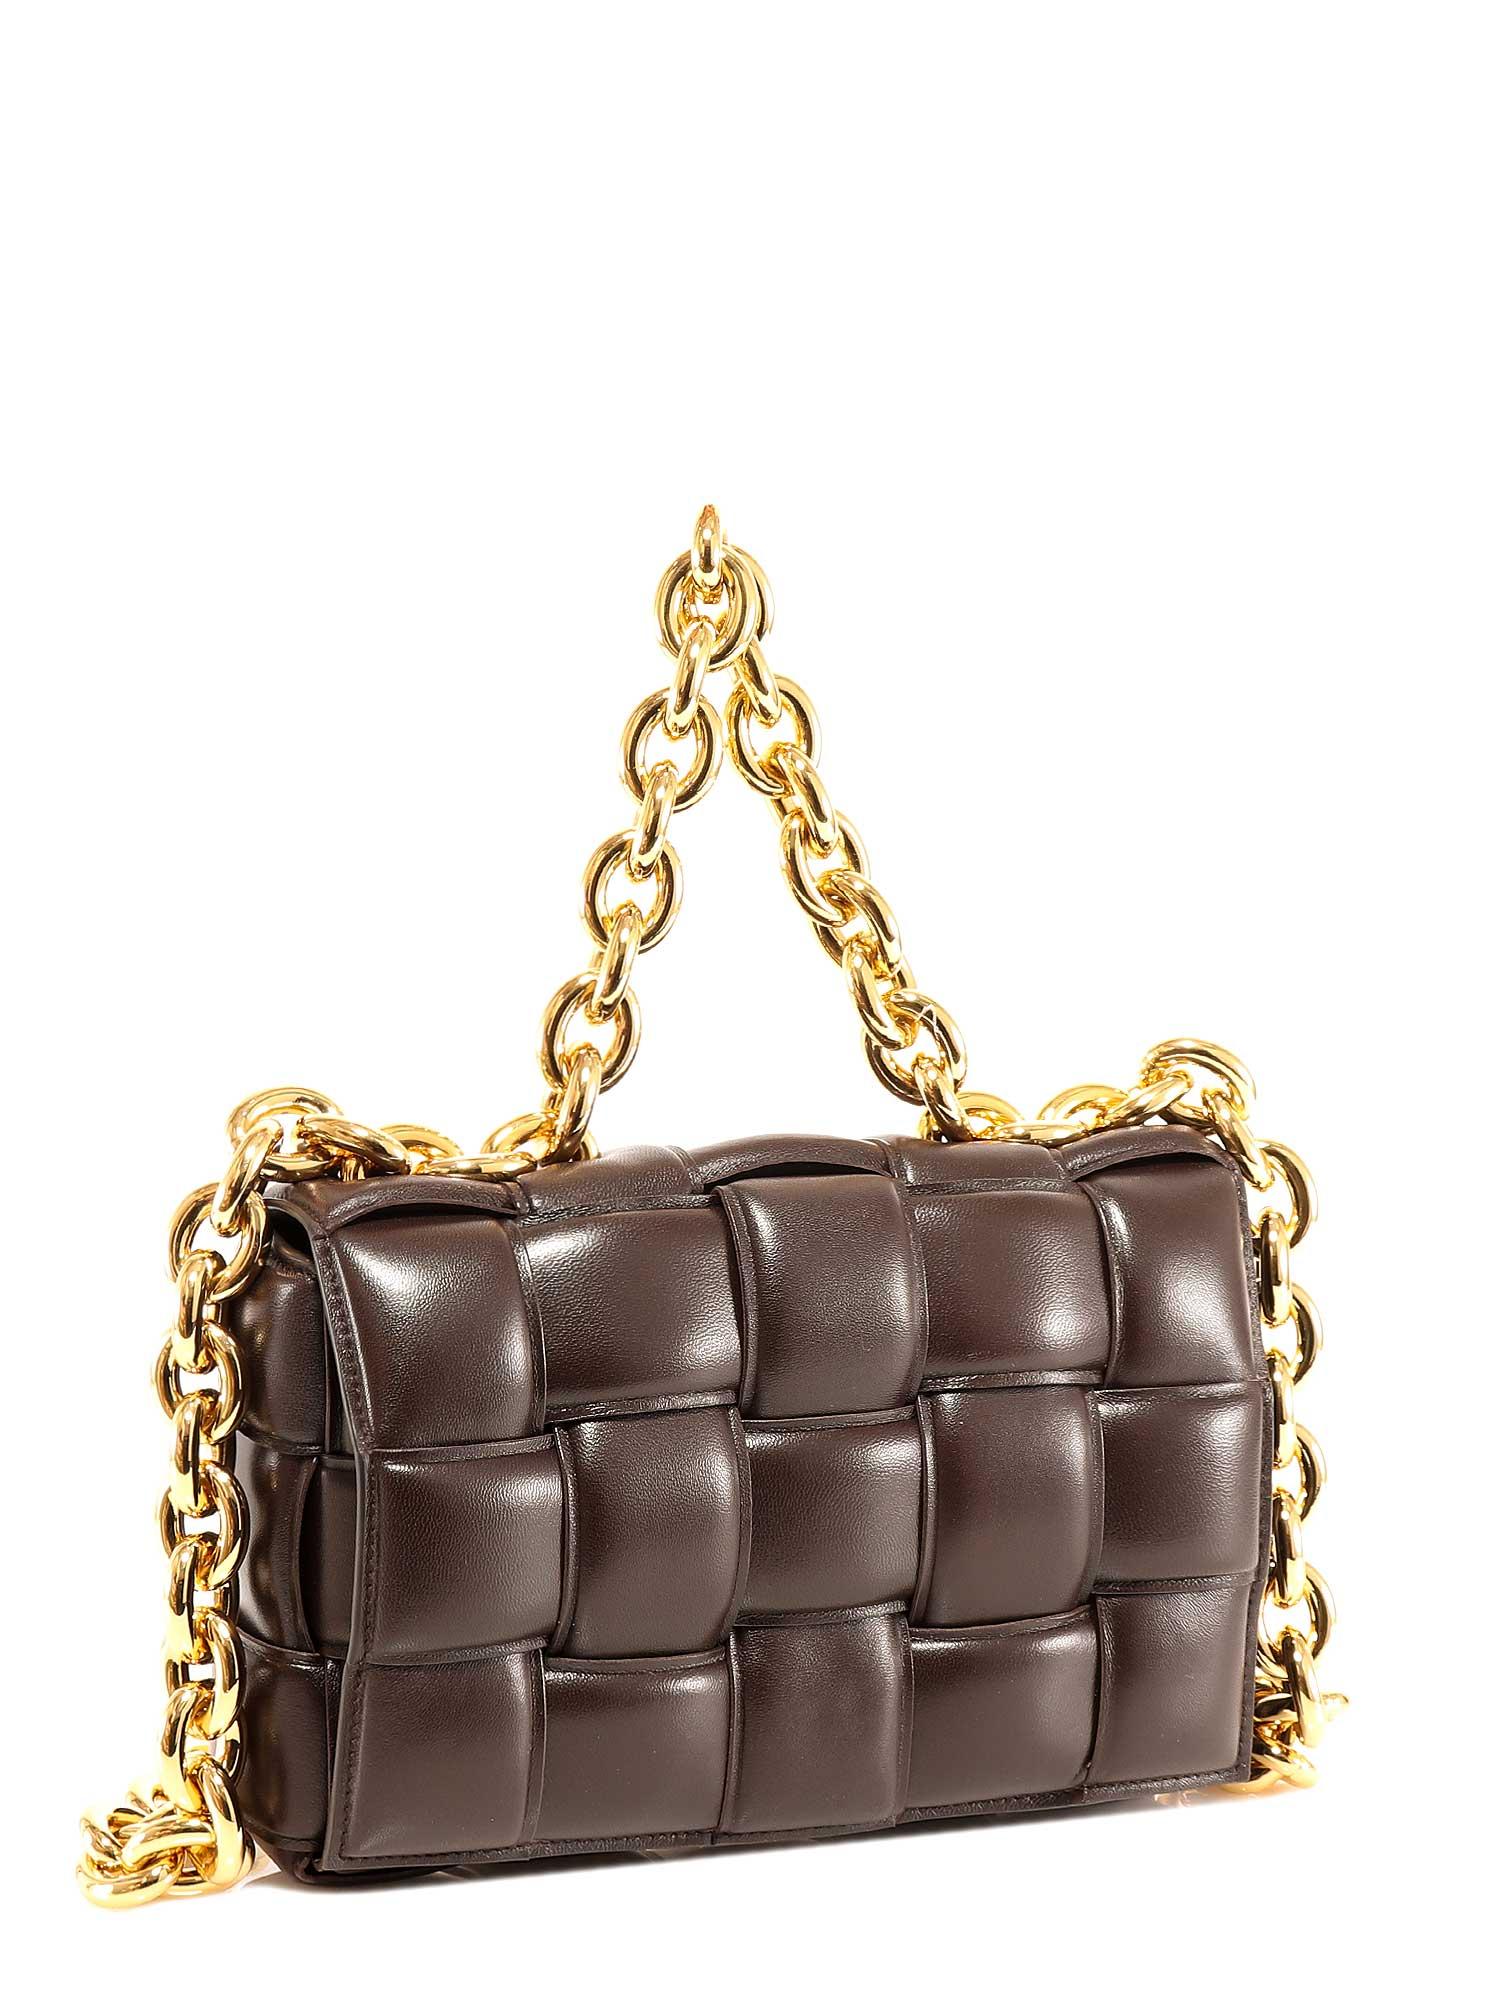 Bottega Veneta Leather The Chain Cassette Shoulder Bag in Brown - Lyst